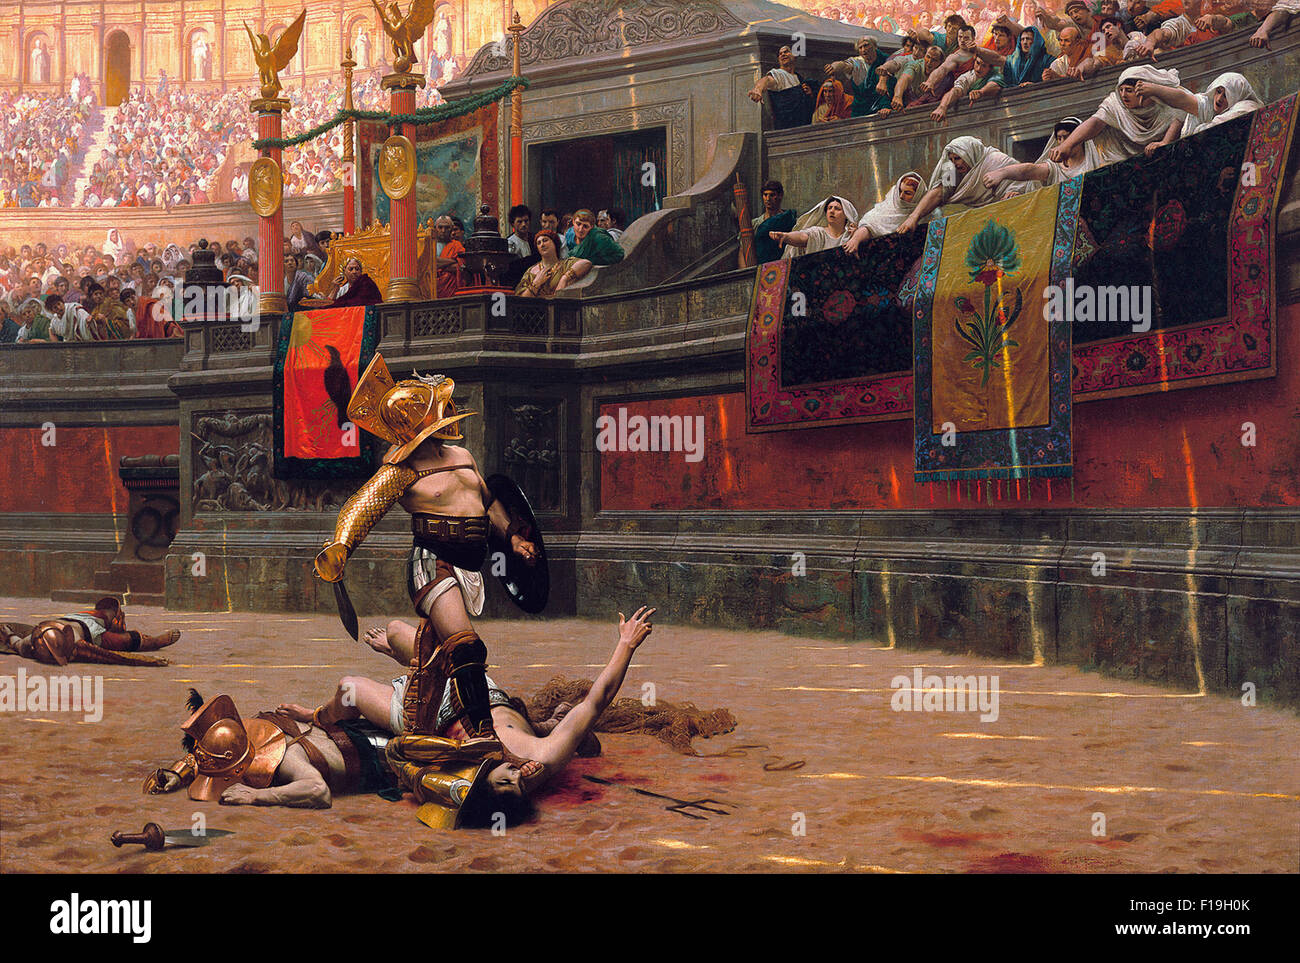 Pollice Verso (1872), die die "Daumen runter" Geste popularisiert. Öl auf Leinwand. Ein römischer Kaiser im Kolosseum macht die berühmten Daumen runter Geste. Gemälde des Künstlers Jean-Léon Gérôme. Stockfoto